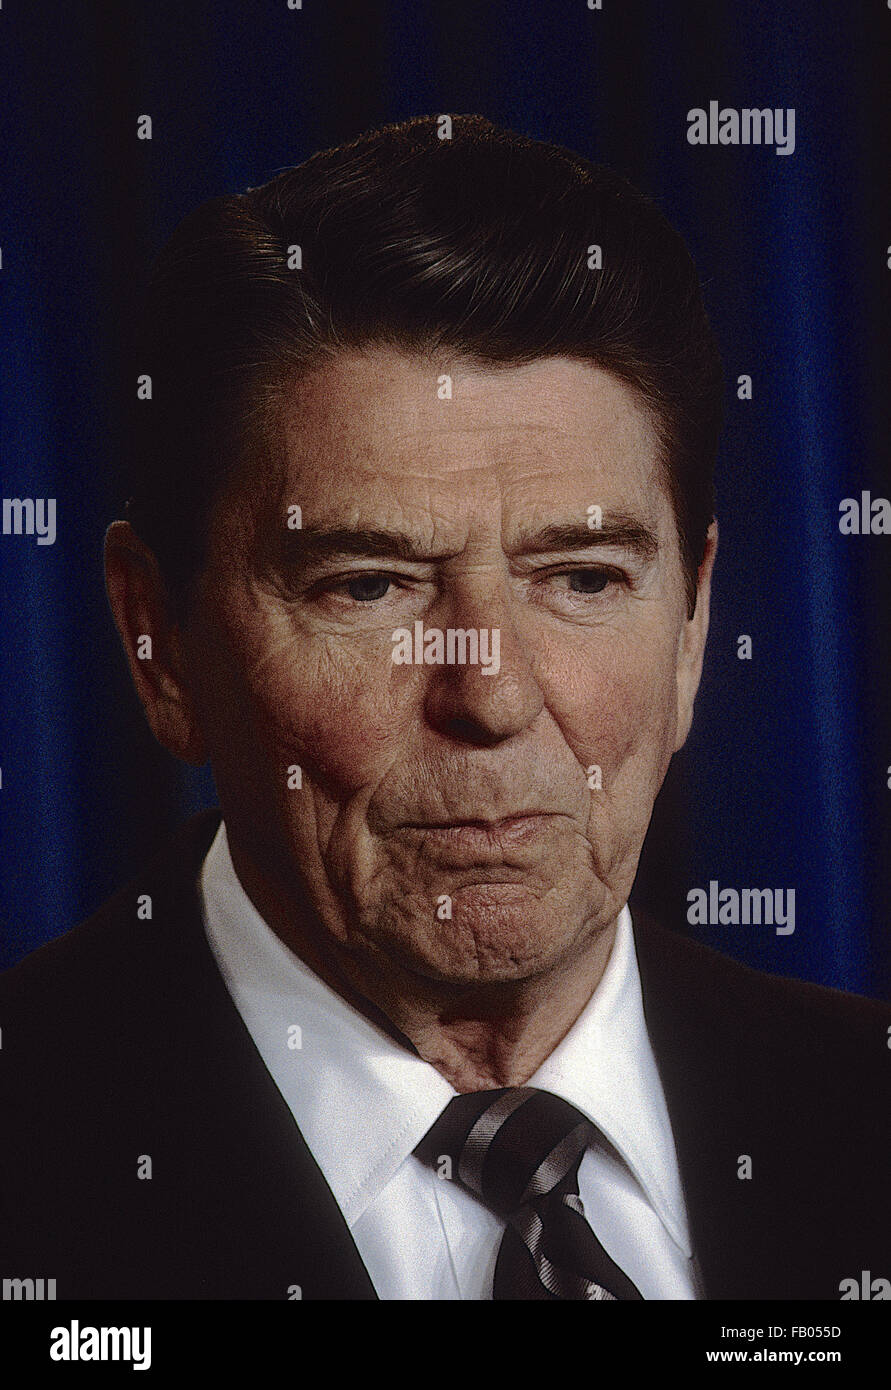 Washington, DC, USA, 14. Mai 1984 Präsident Ronald Reagan Bemerkungen und eine Frage-und-Antwort-Sitzung mit Reportern zu in- und ausländischen Themen in der Briefing-Room des weißen Hauses.  Bildnachweis: Mark Reinstein Stockfoto